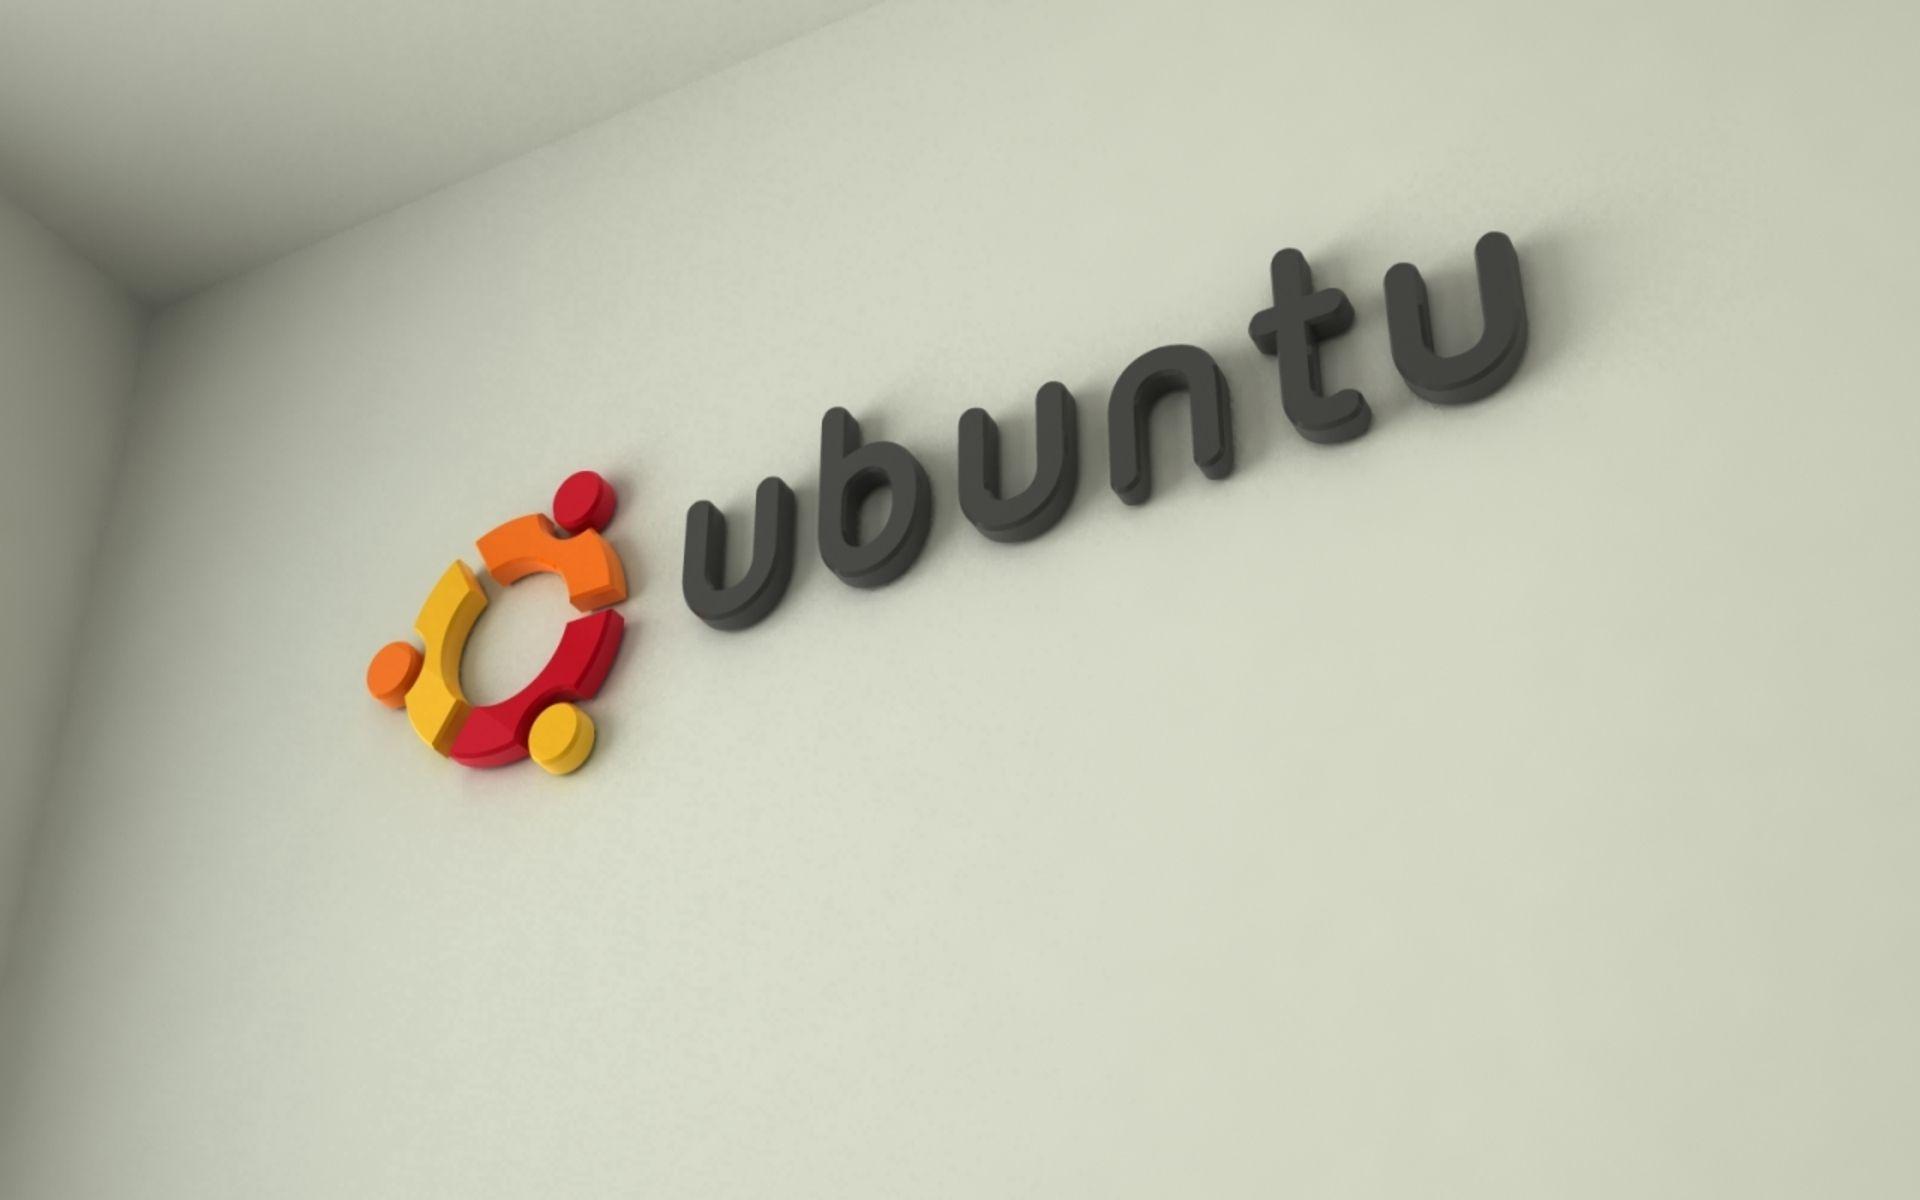 Ubuntu Wallpaper. Linux Wallpaper #